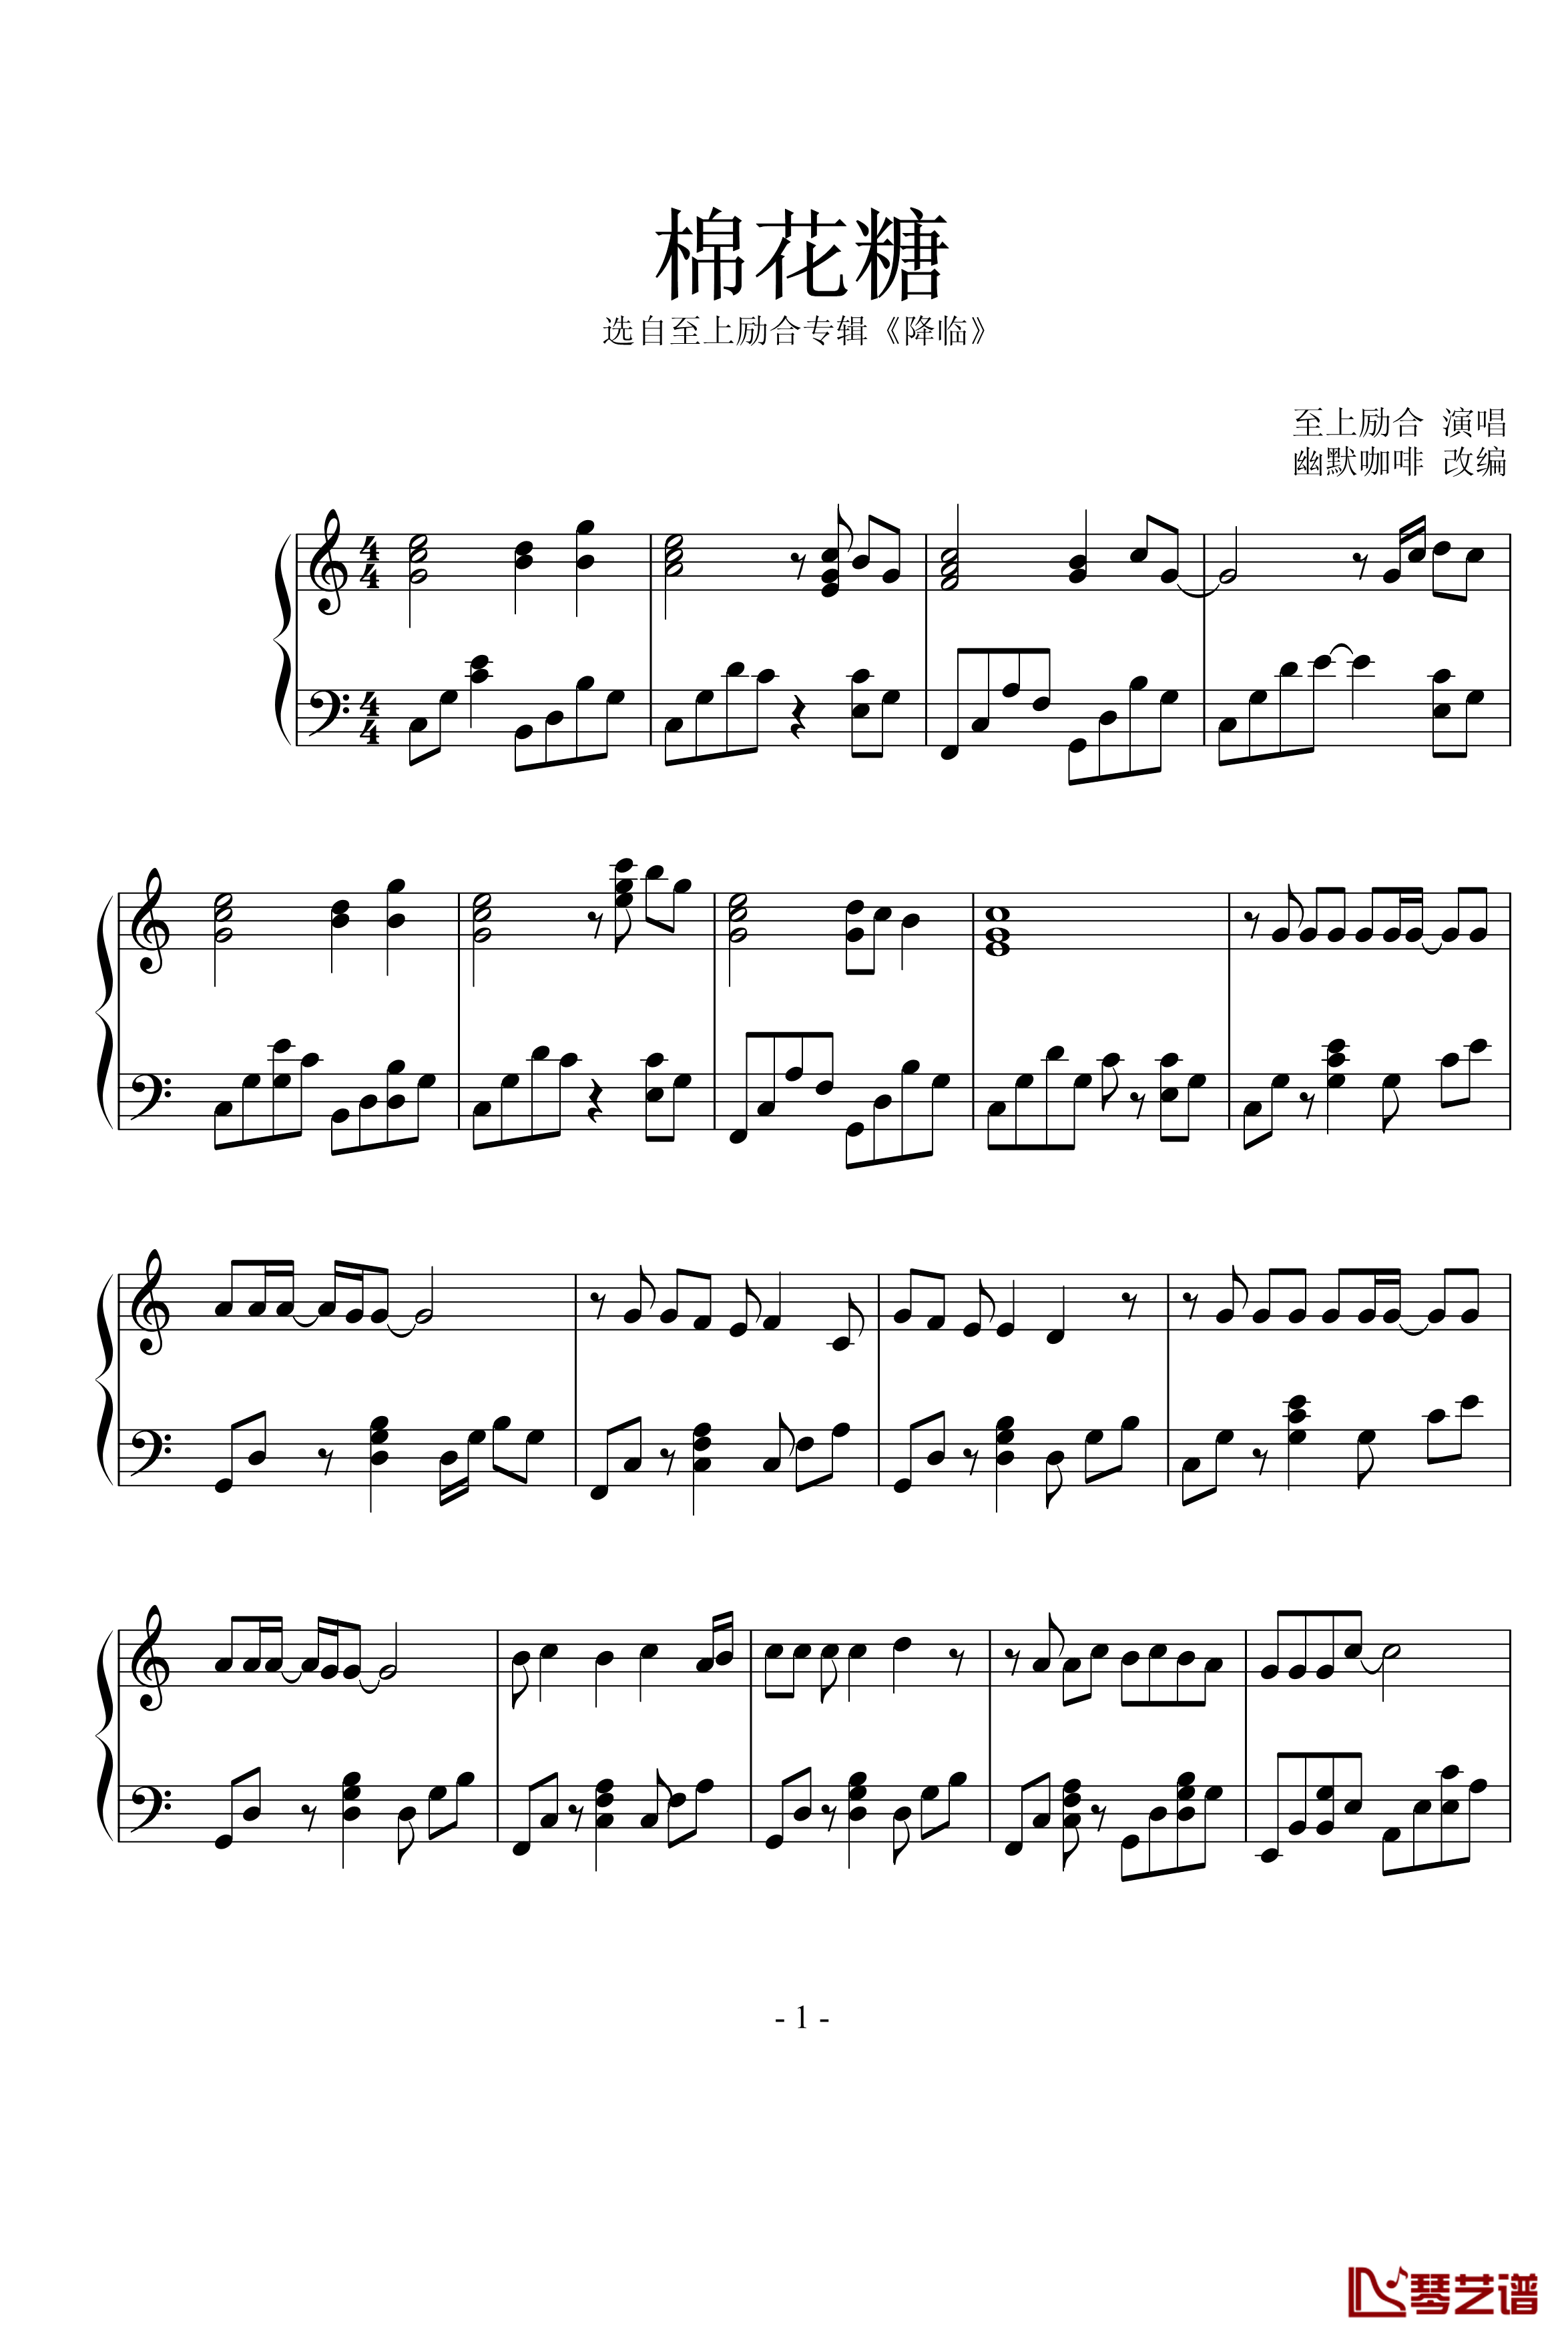 棉花糖钢琴谱-演奏版-至上励合1